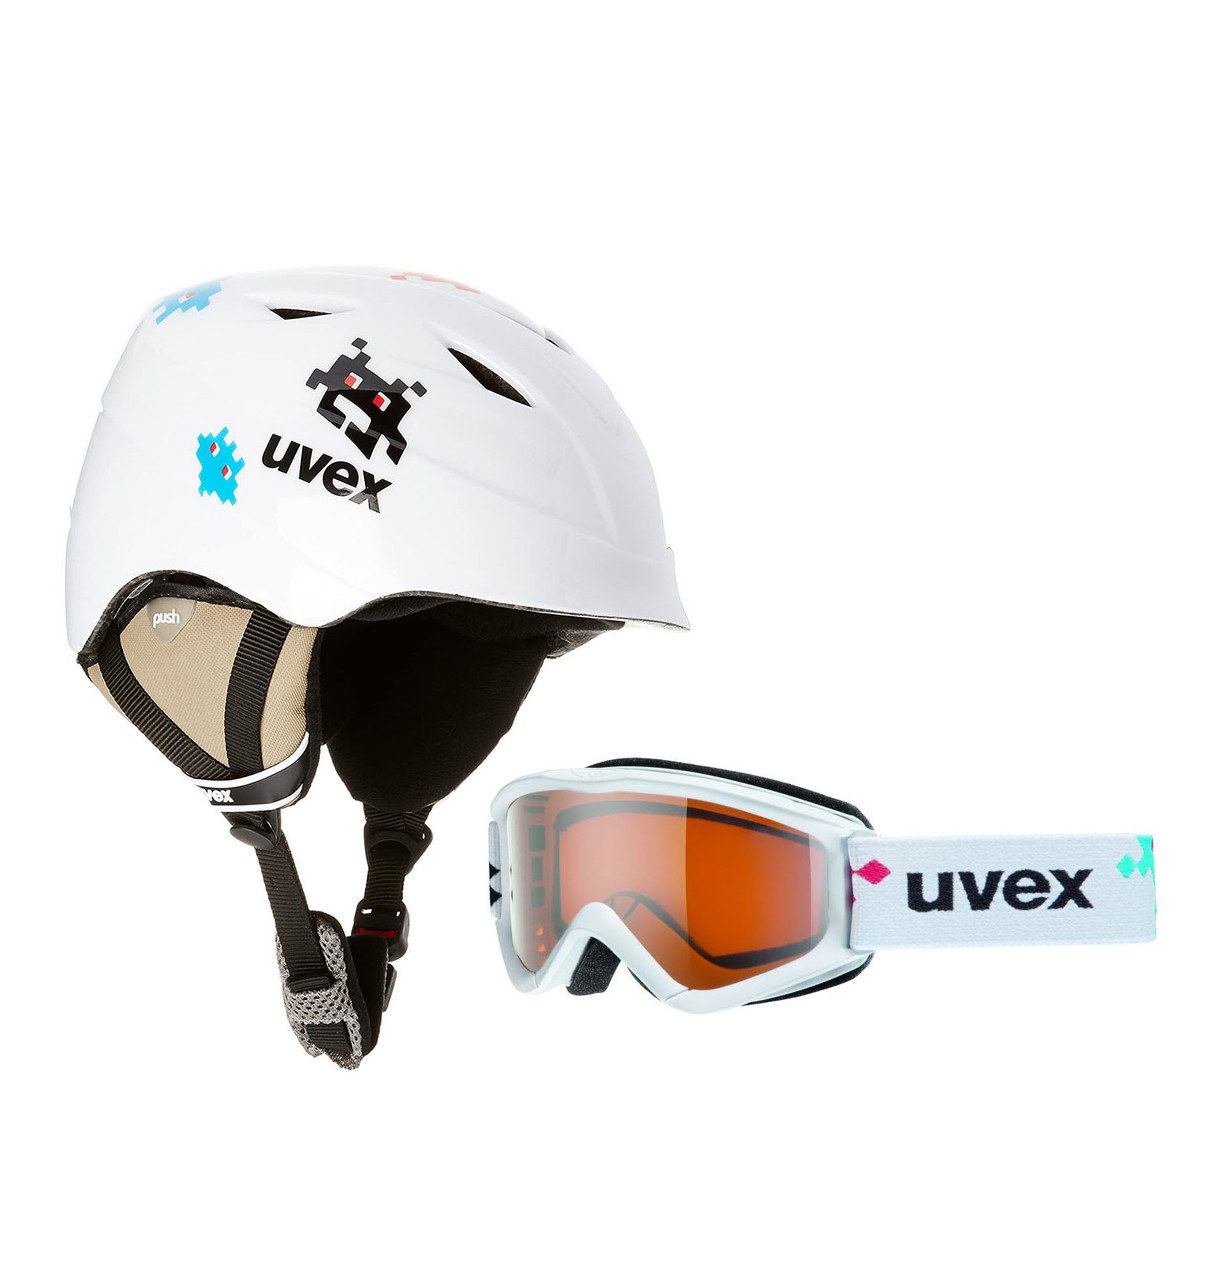 Комплект шлем горнолыжный детский + маска Uvex Airwing II SET (48-52) для ребенка 3-4 года Белый (S56S1121401)